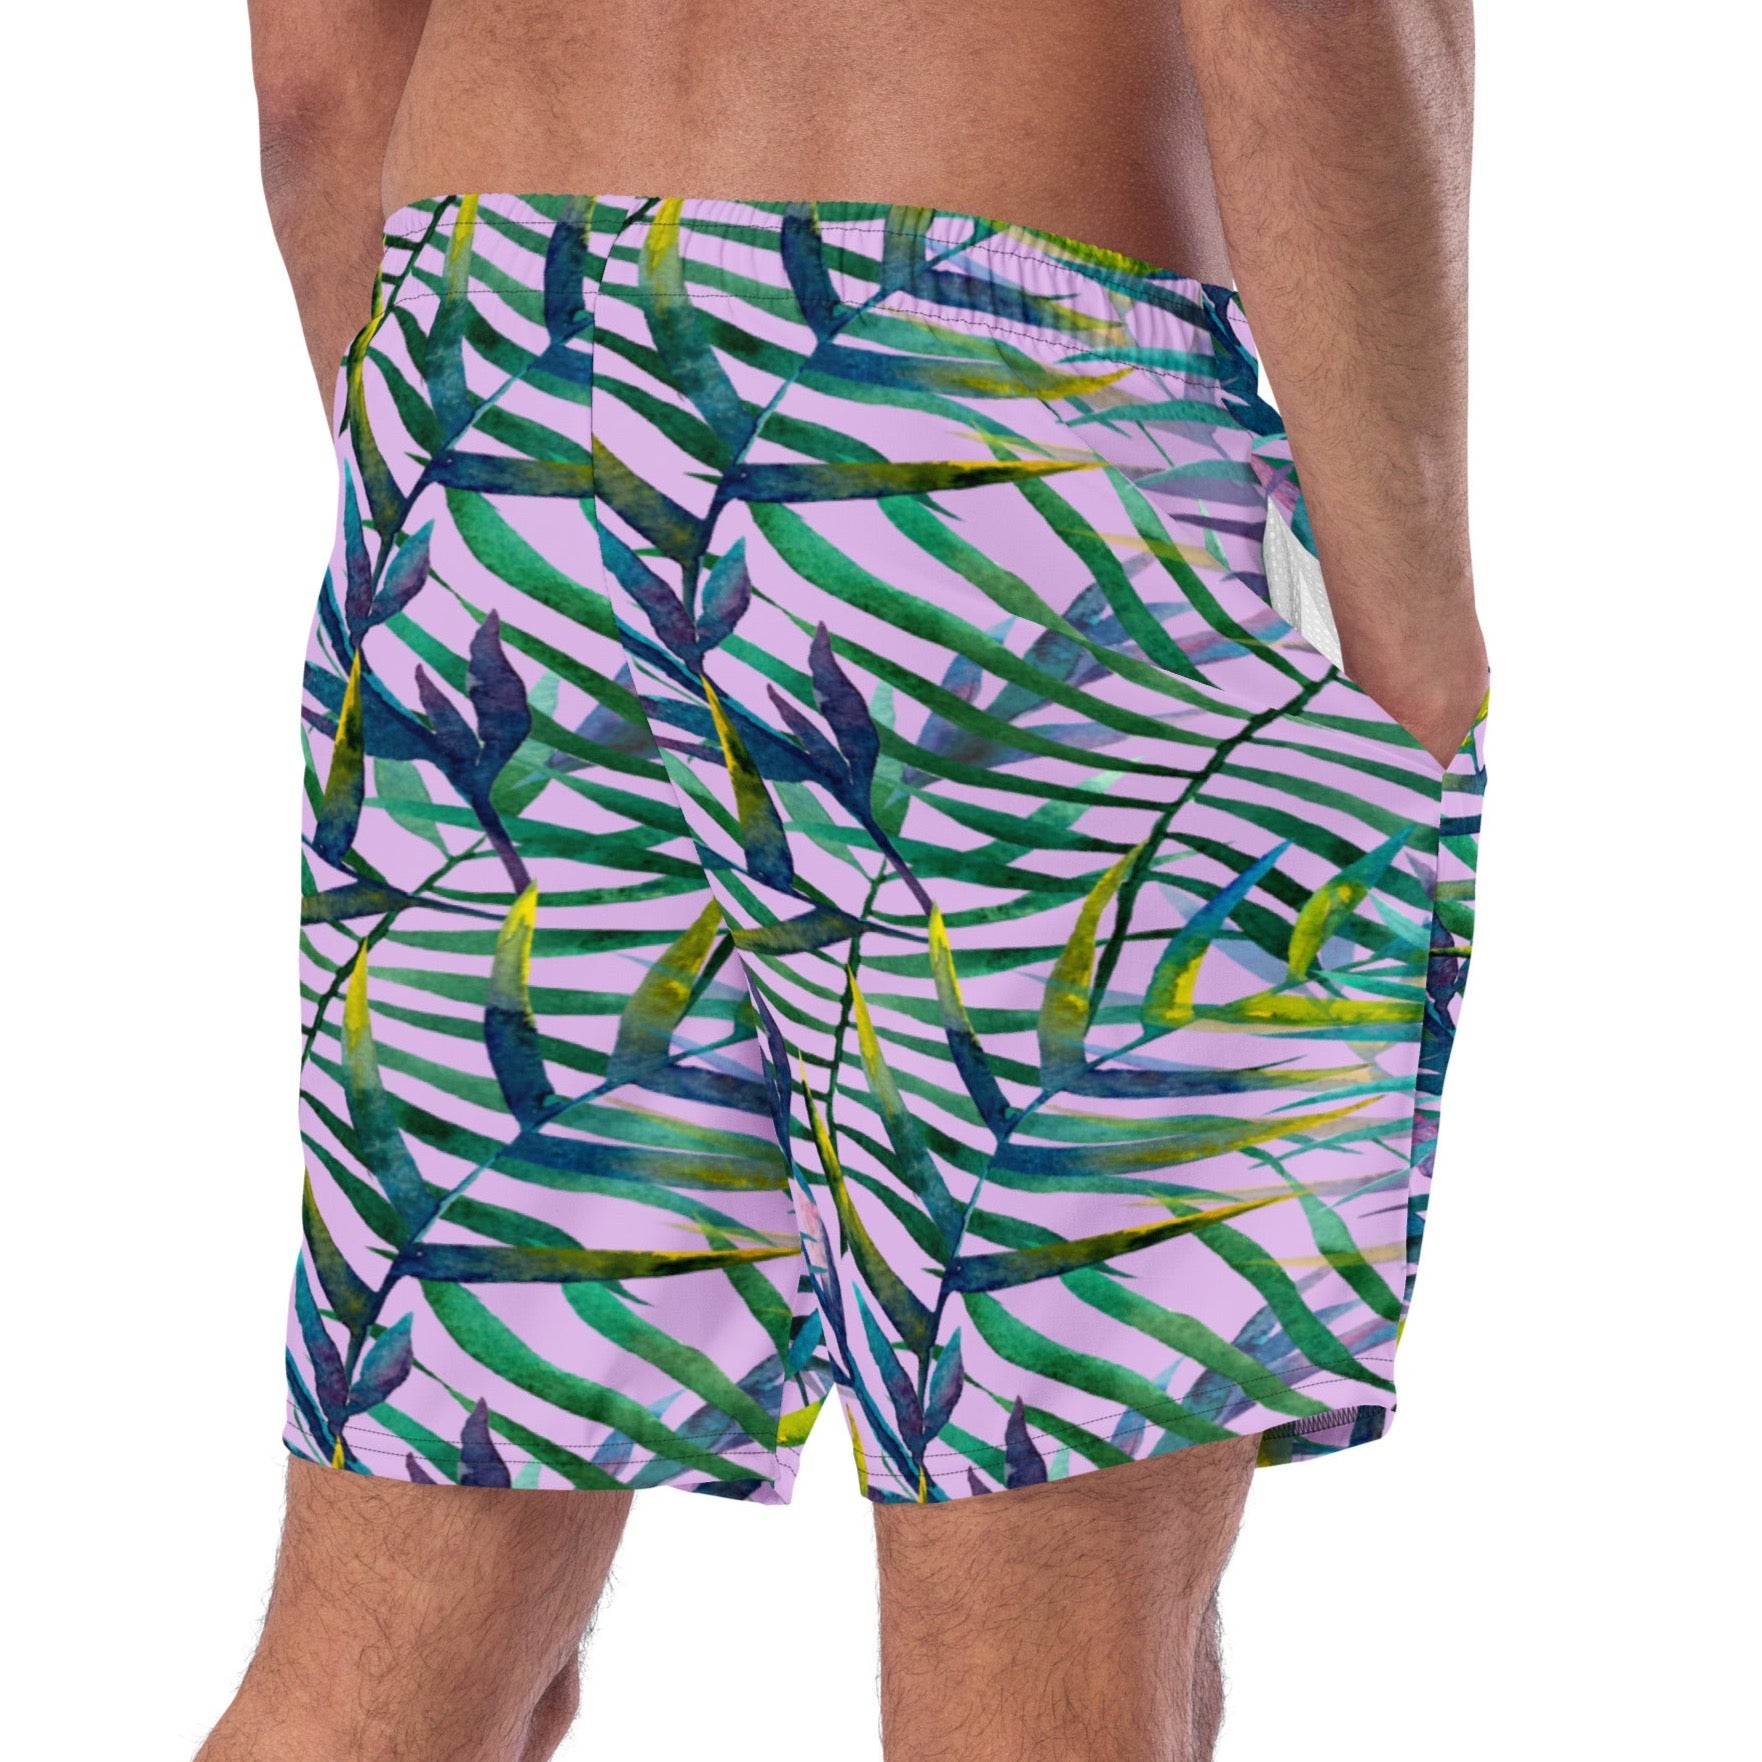 Fashionable leaf print swim trunks for men's summer